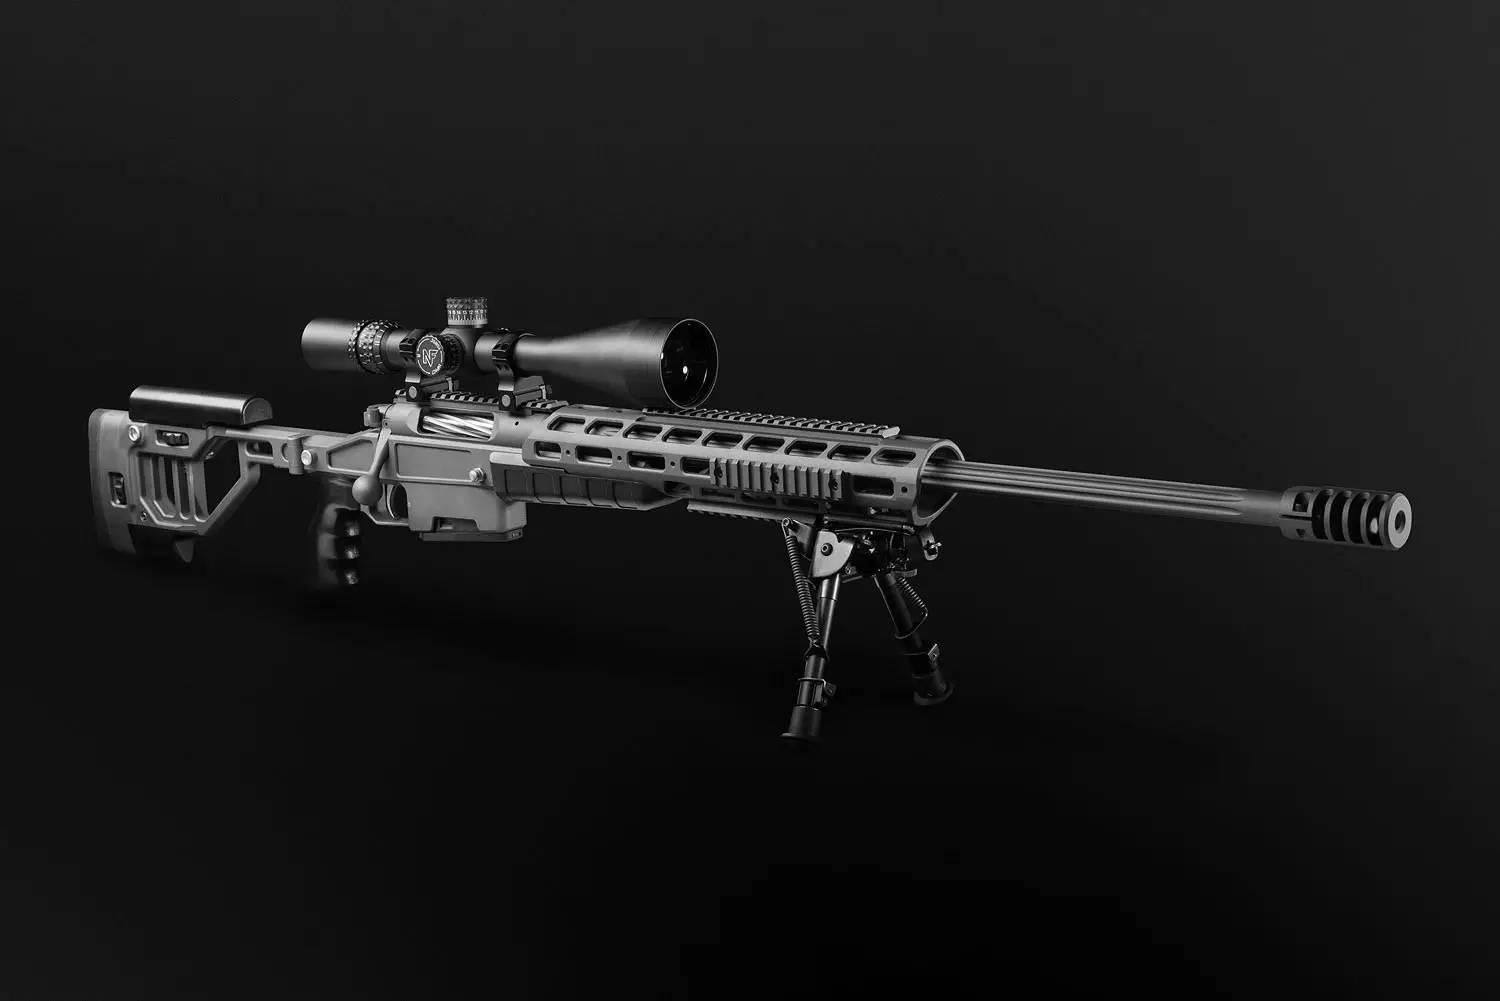 奥尔西t-5000高精度狙击步枪使用特制的高精锻枪管,这种枪管具有难以